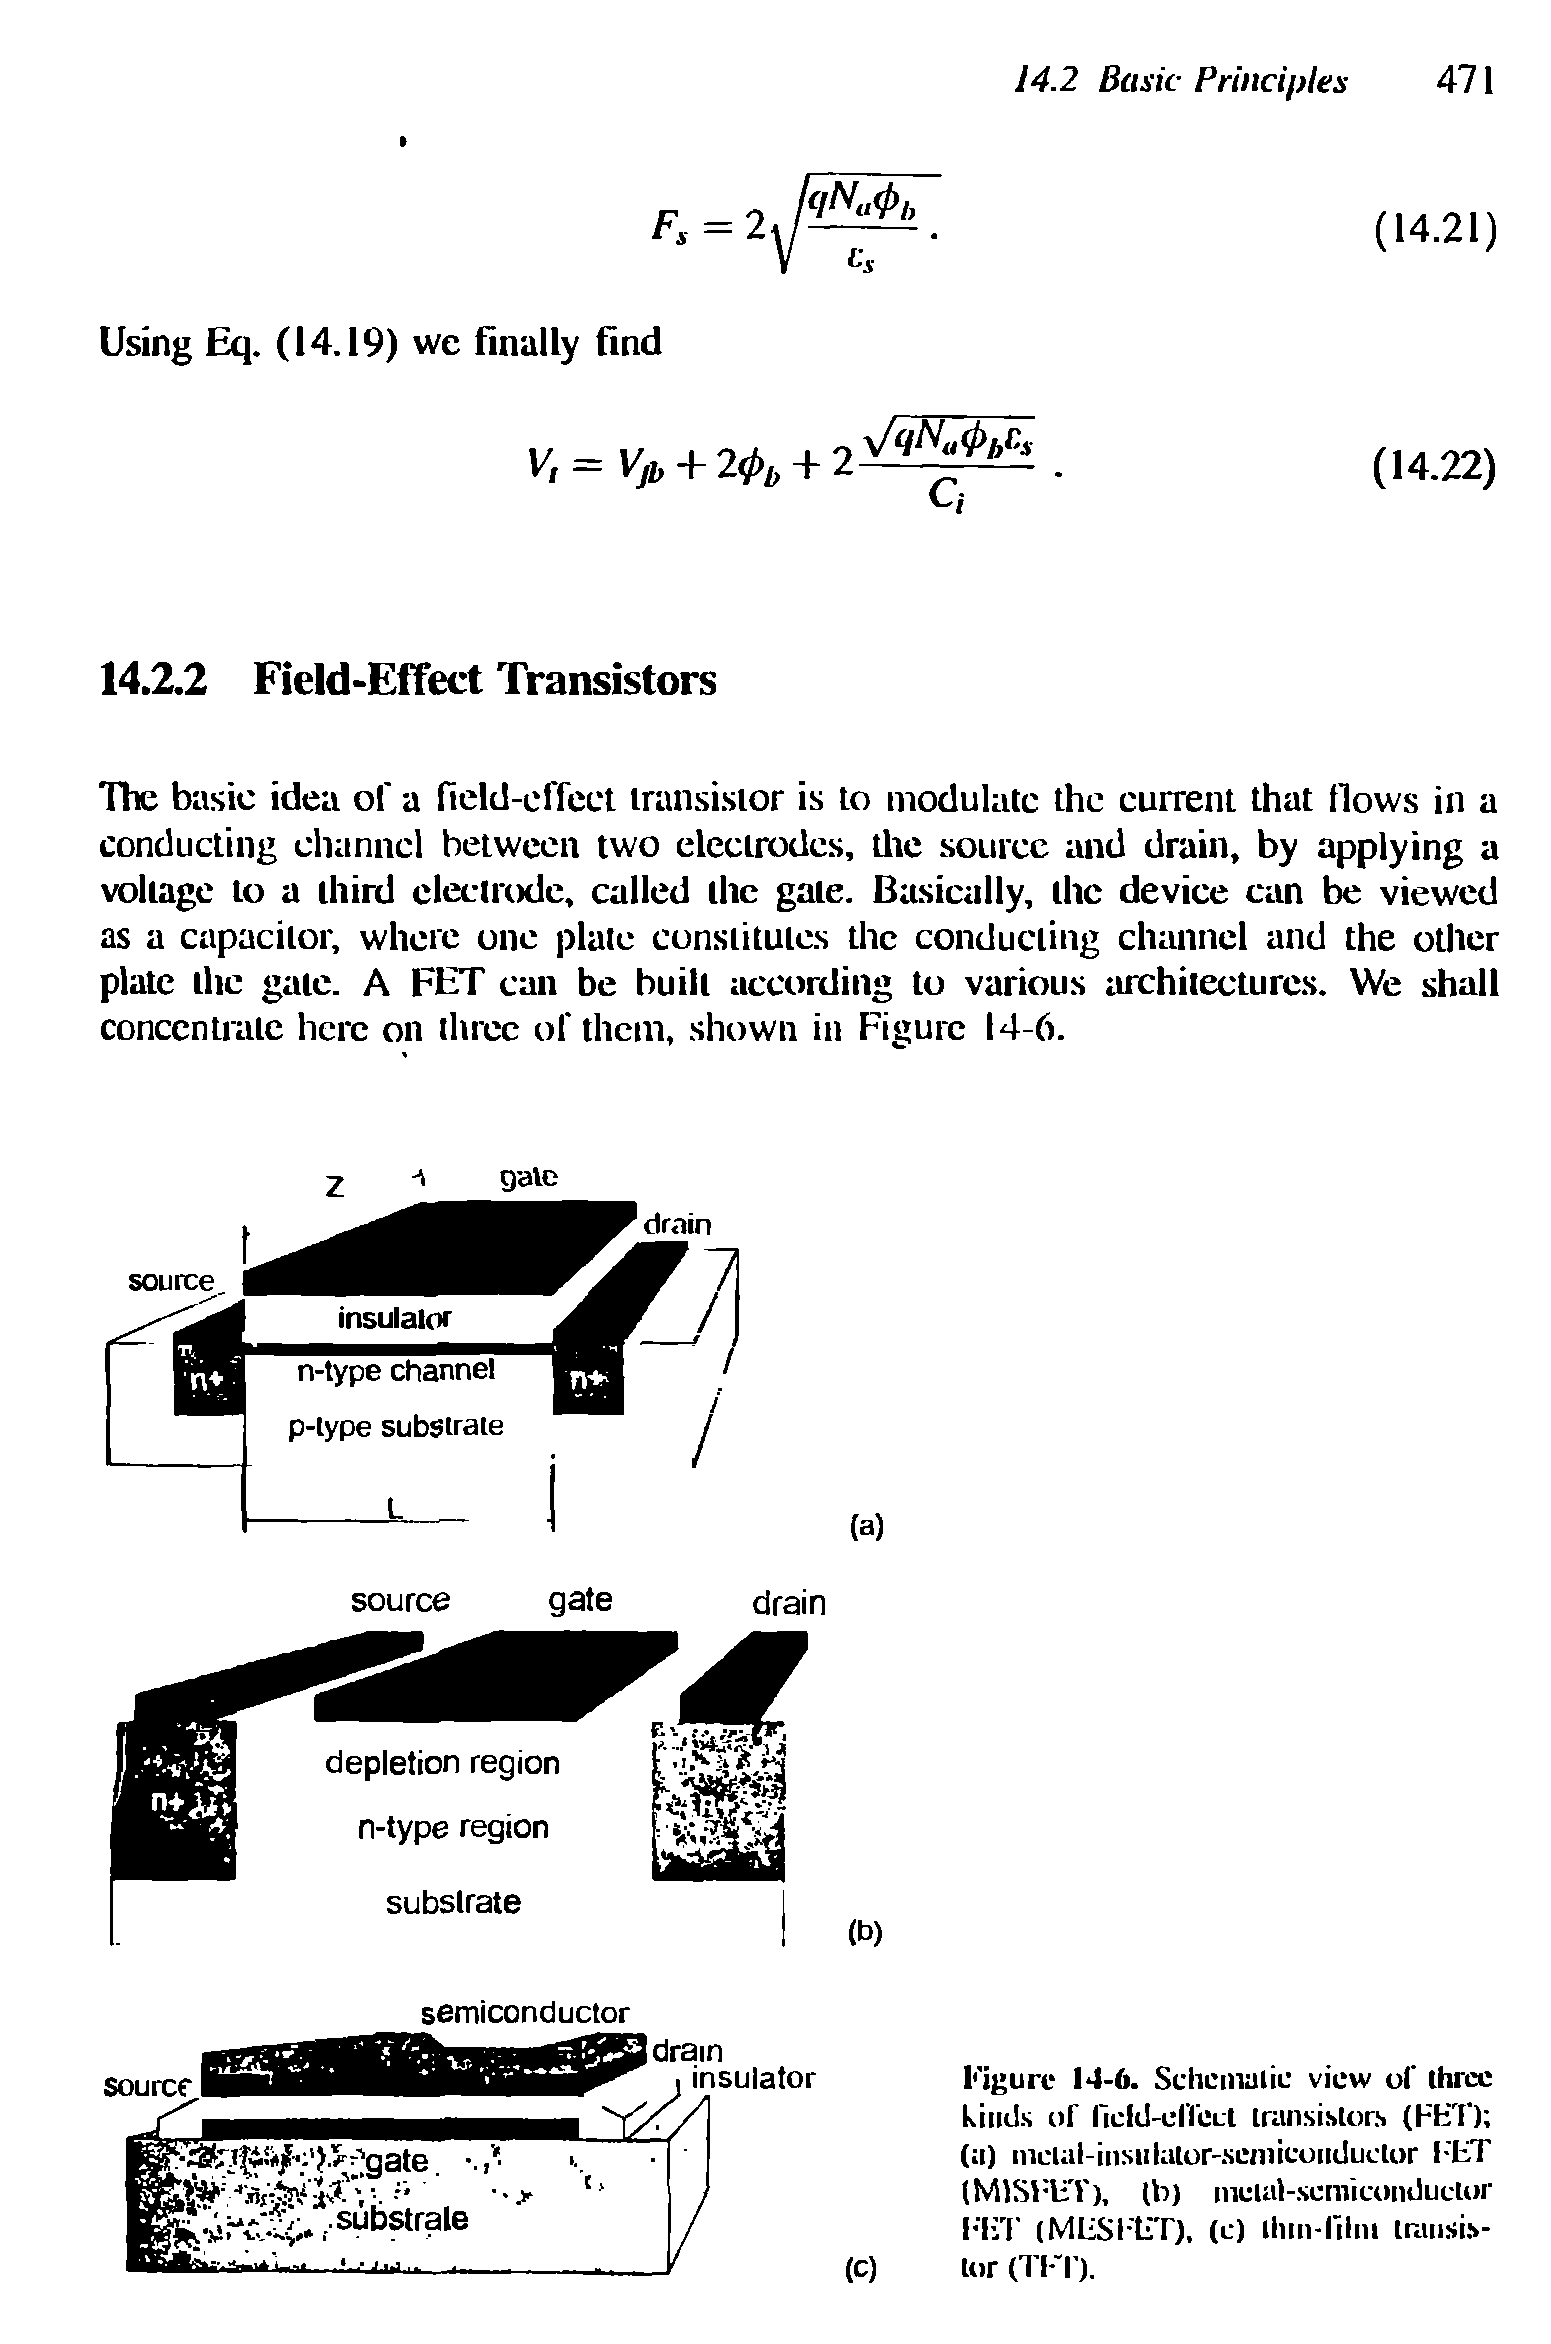 Figure 14-6. Schematic view of three kinds or ficld-dl erl transistors (HKT) (a) mclal-insiilulor-scniicuiiduclor ITT (M1STUT), lb) metal-semiconductor l-TT (MUSTtiT), (c) Ihtn-lilni trausis-(c) lor (TIT).